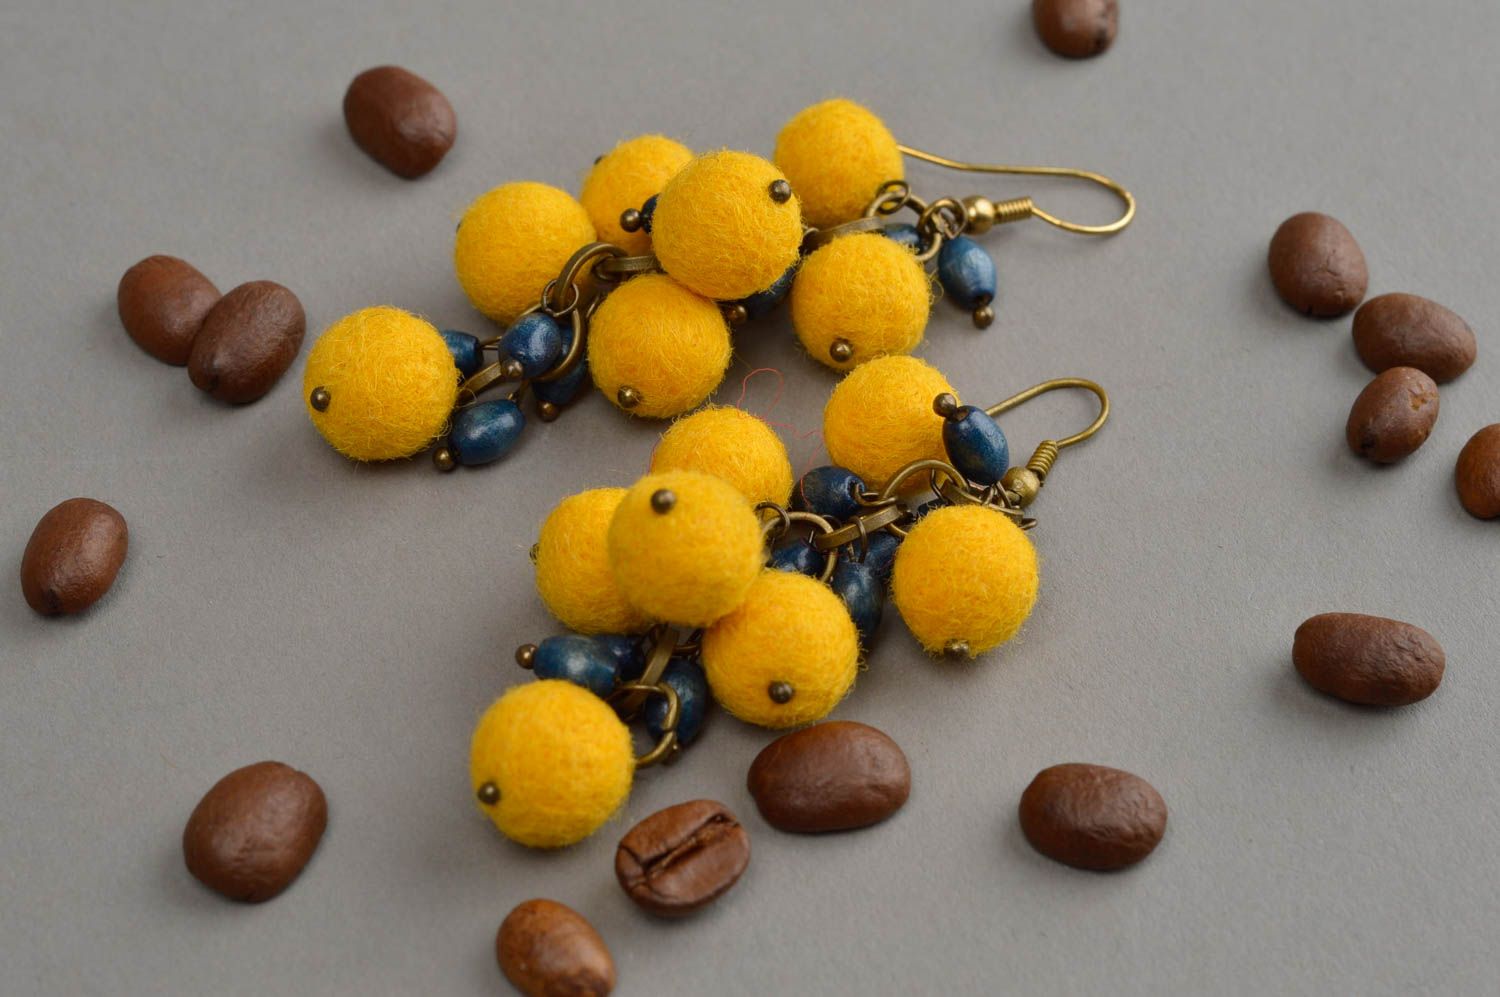 Шерстяные серьги грозди в технике валяния из шерсти желтые на крючках хенд мейд фото 1